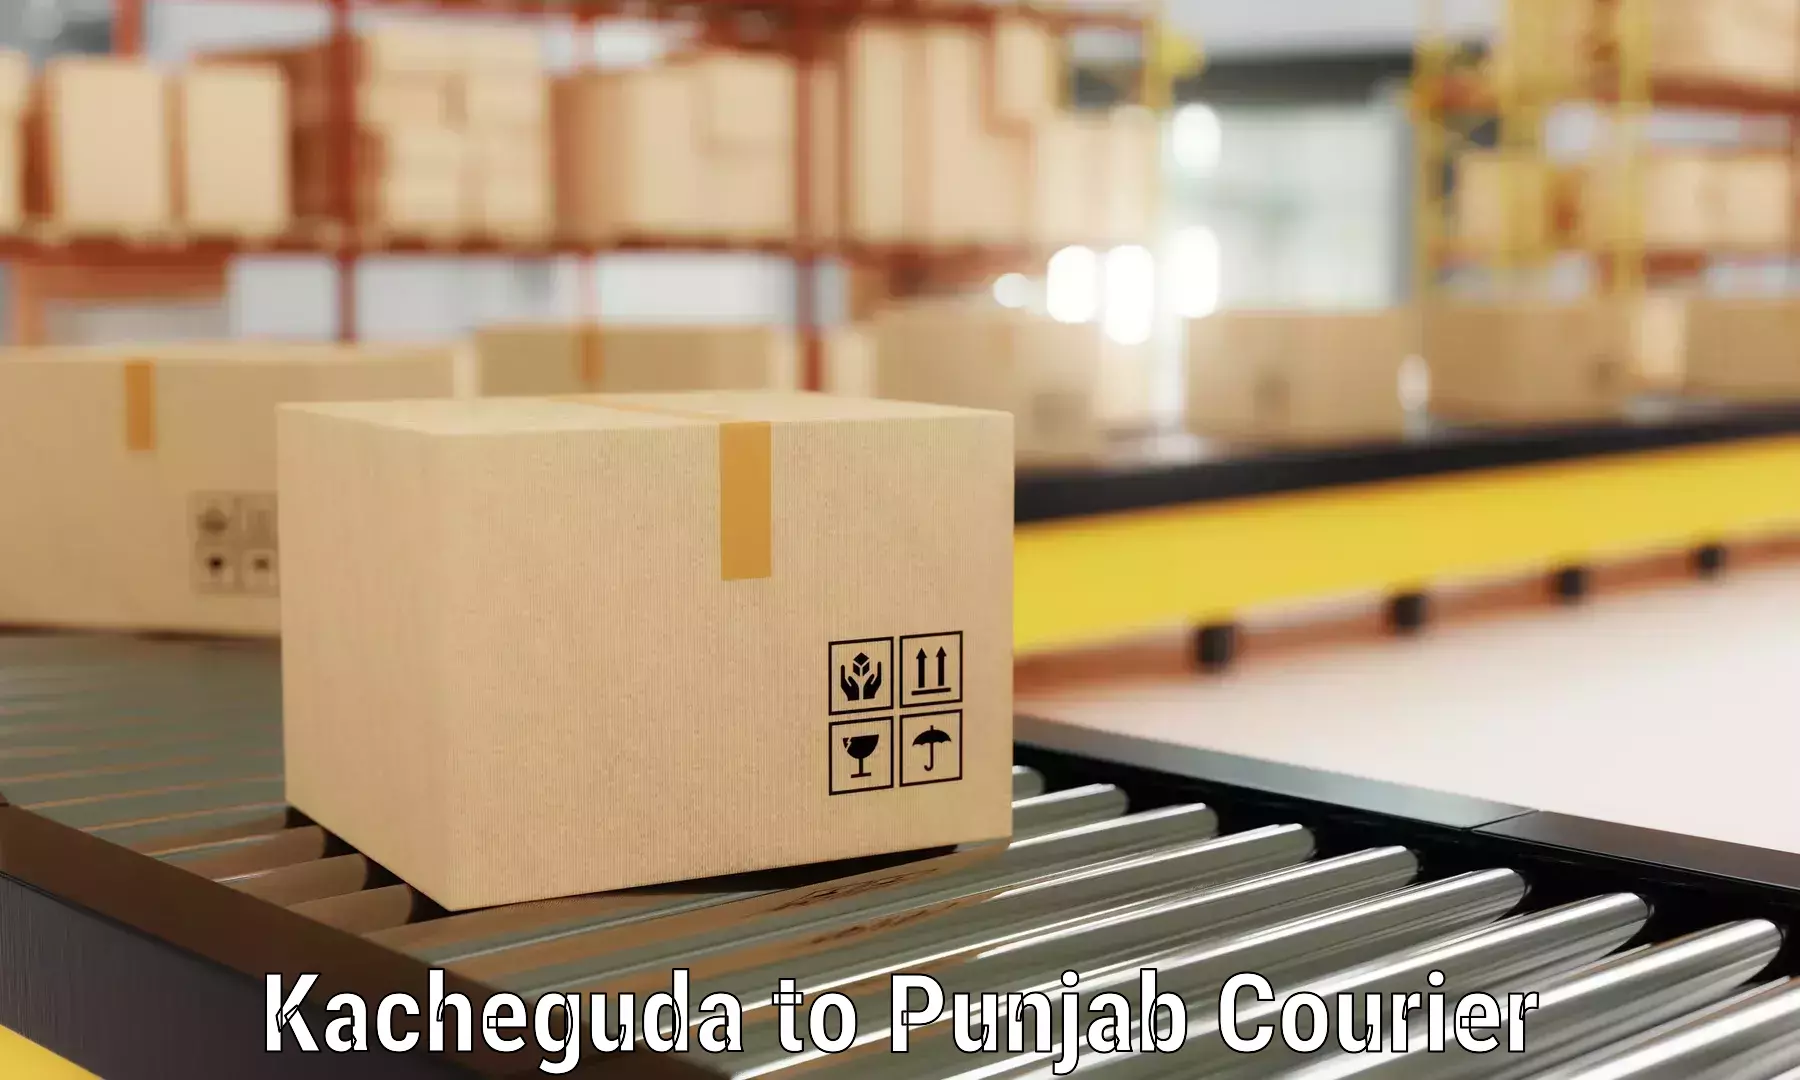 Efficient moving company Kacheguda to Central University of Punjab Bathinda